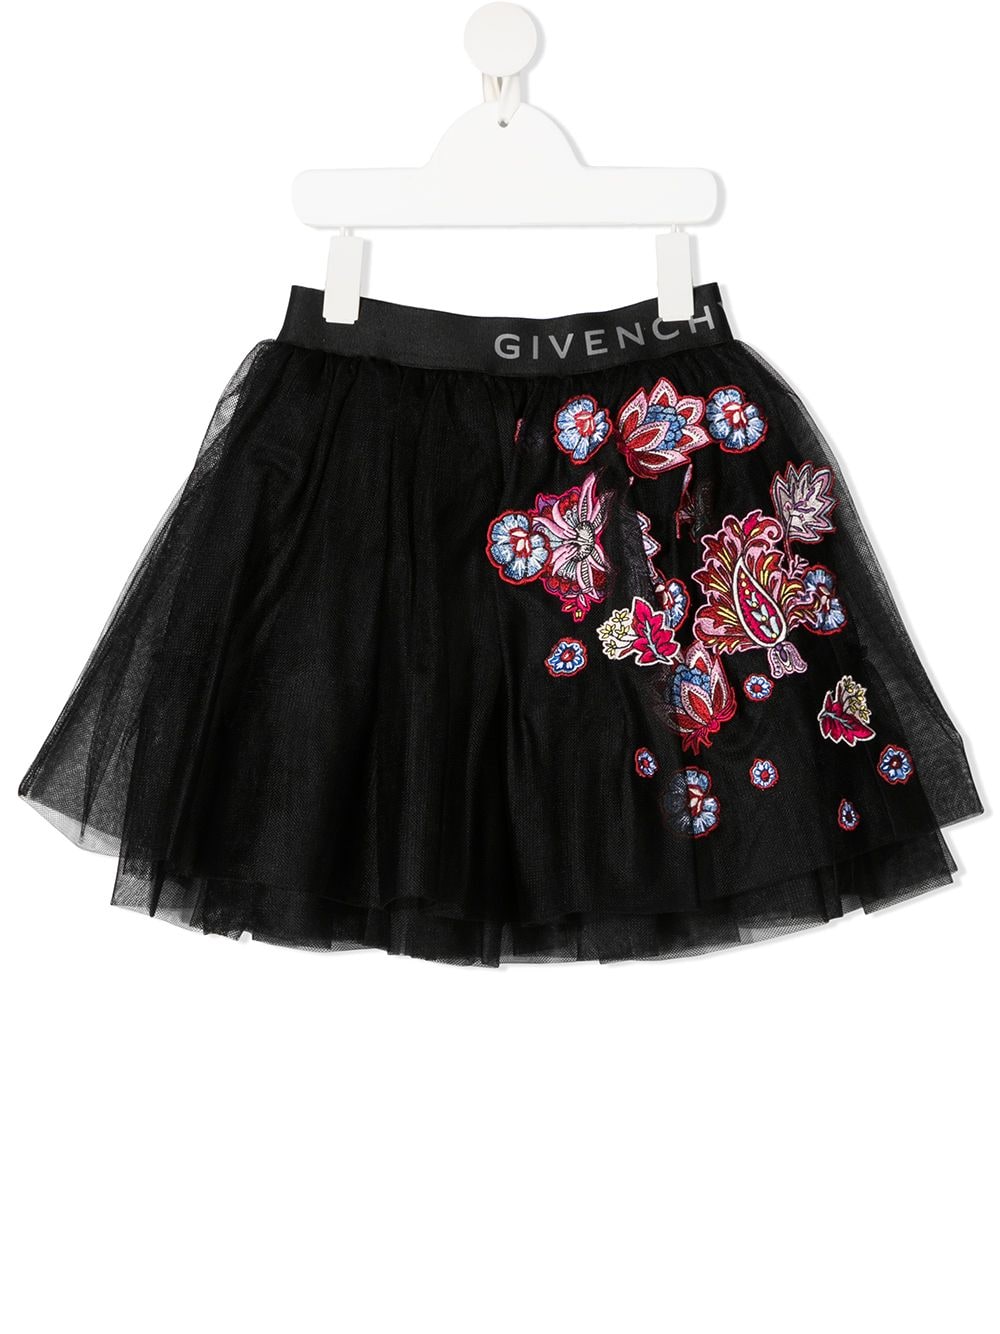 фото Givenchy kids пышная юбка с цветочной вышивкой